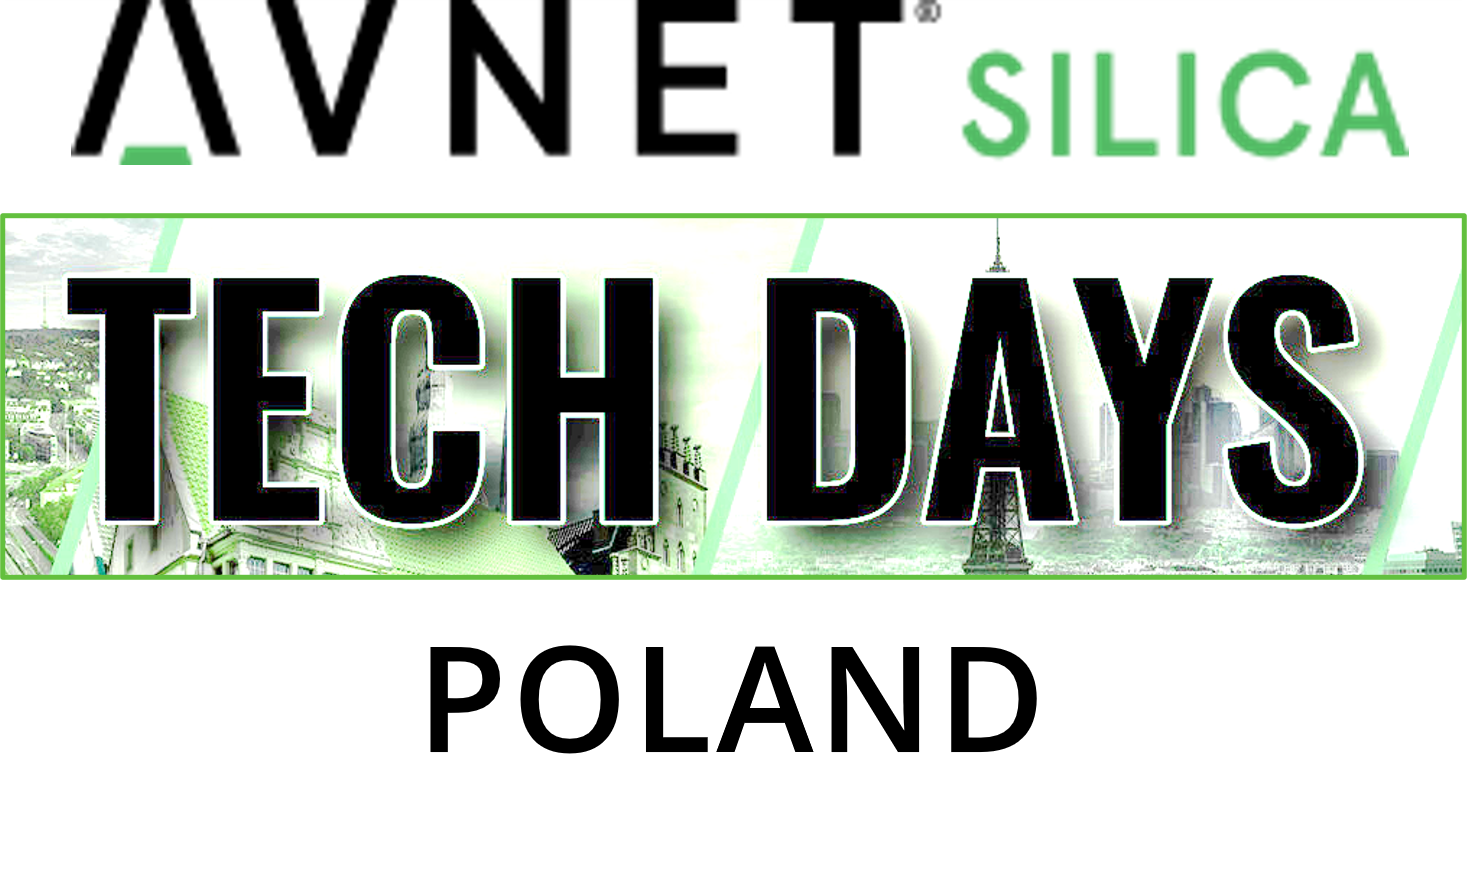 Avnet Silica Tech Day Poland